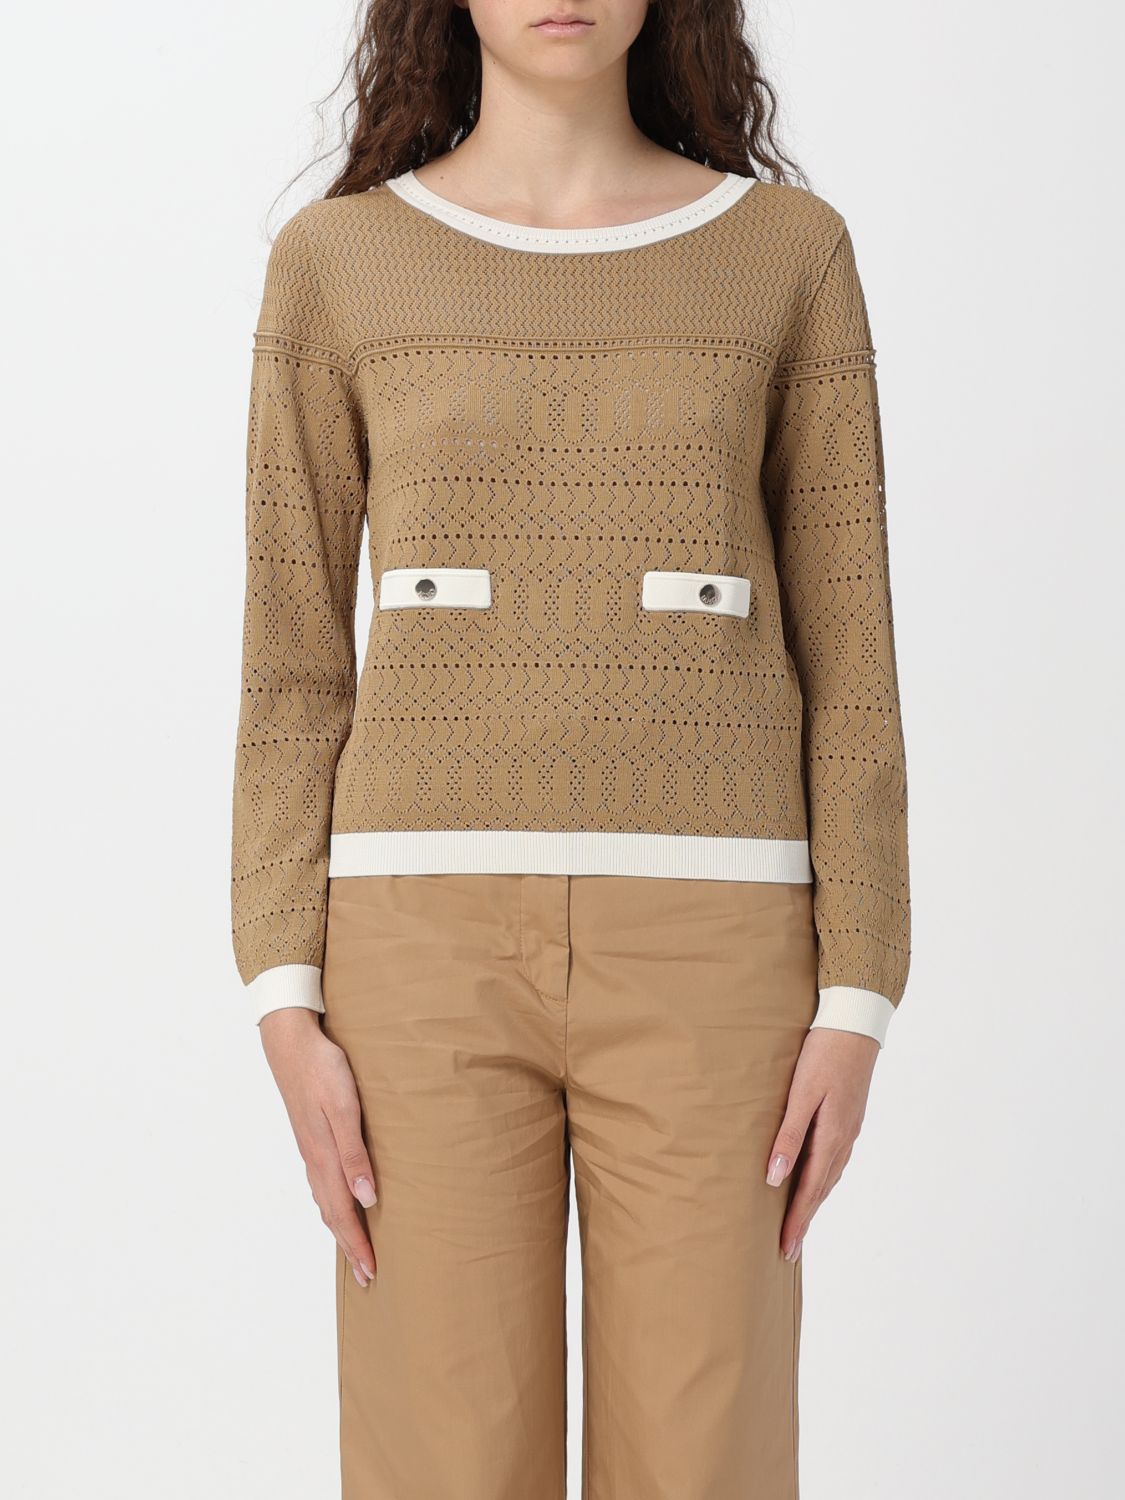 Shop Liu •jo Sweater Liu Jo Woman Color Camel